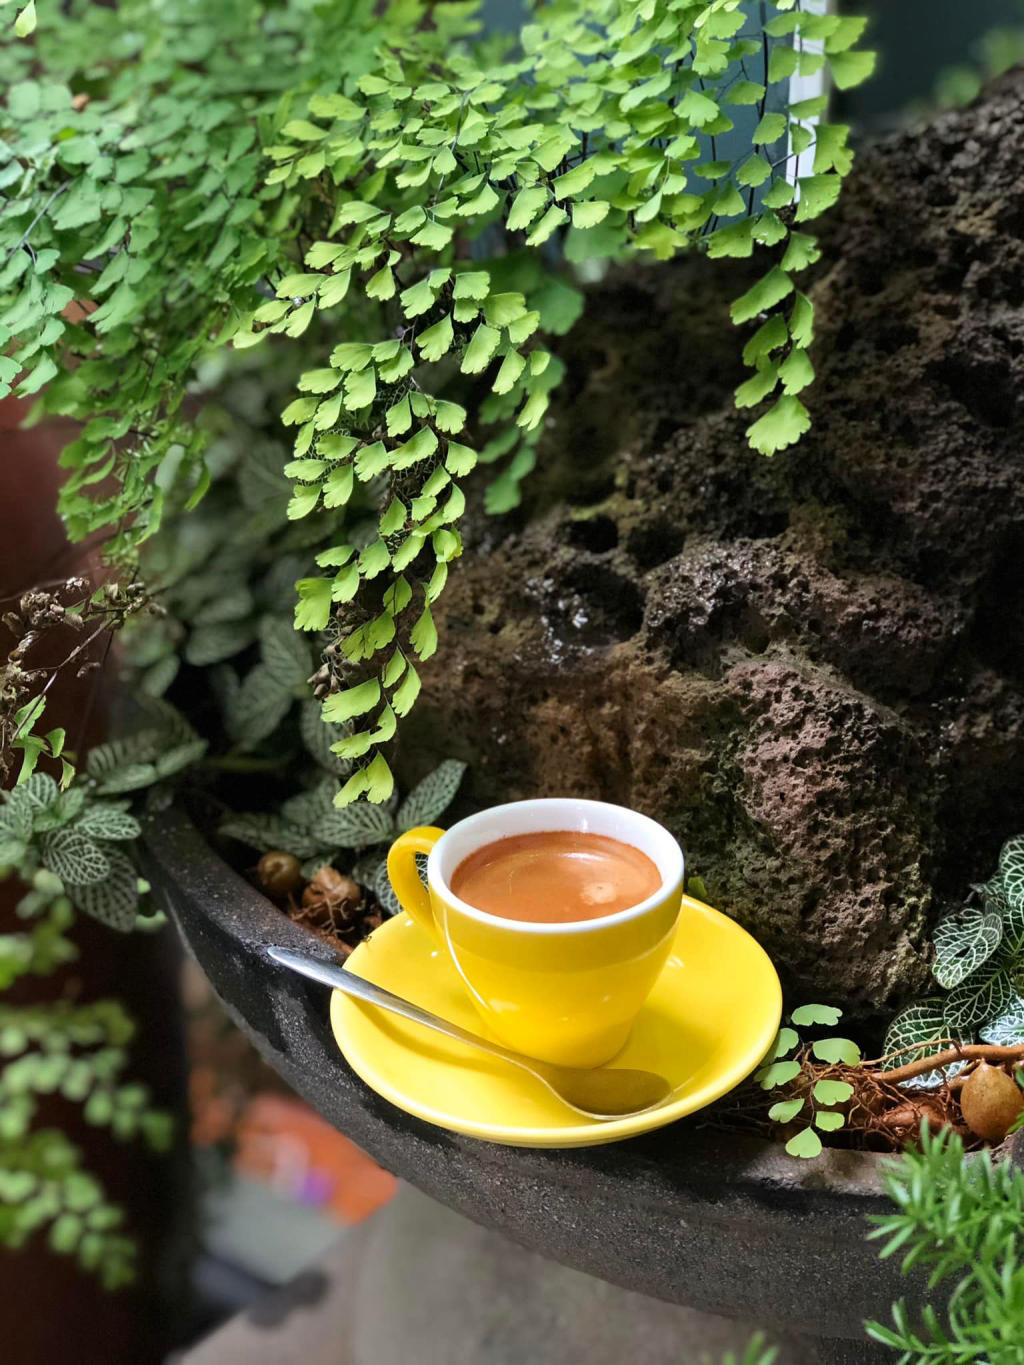 Lâm Viên Coffee Garden, quán cà phê không gian xanh tại phố núi 6